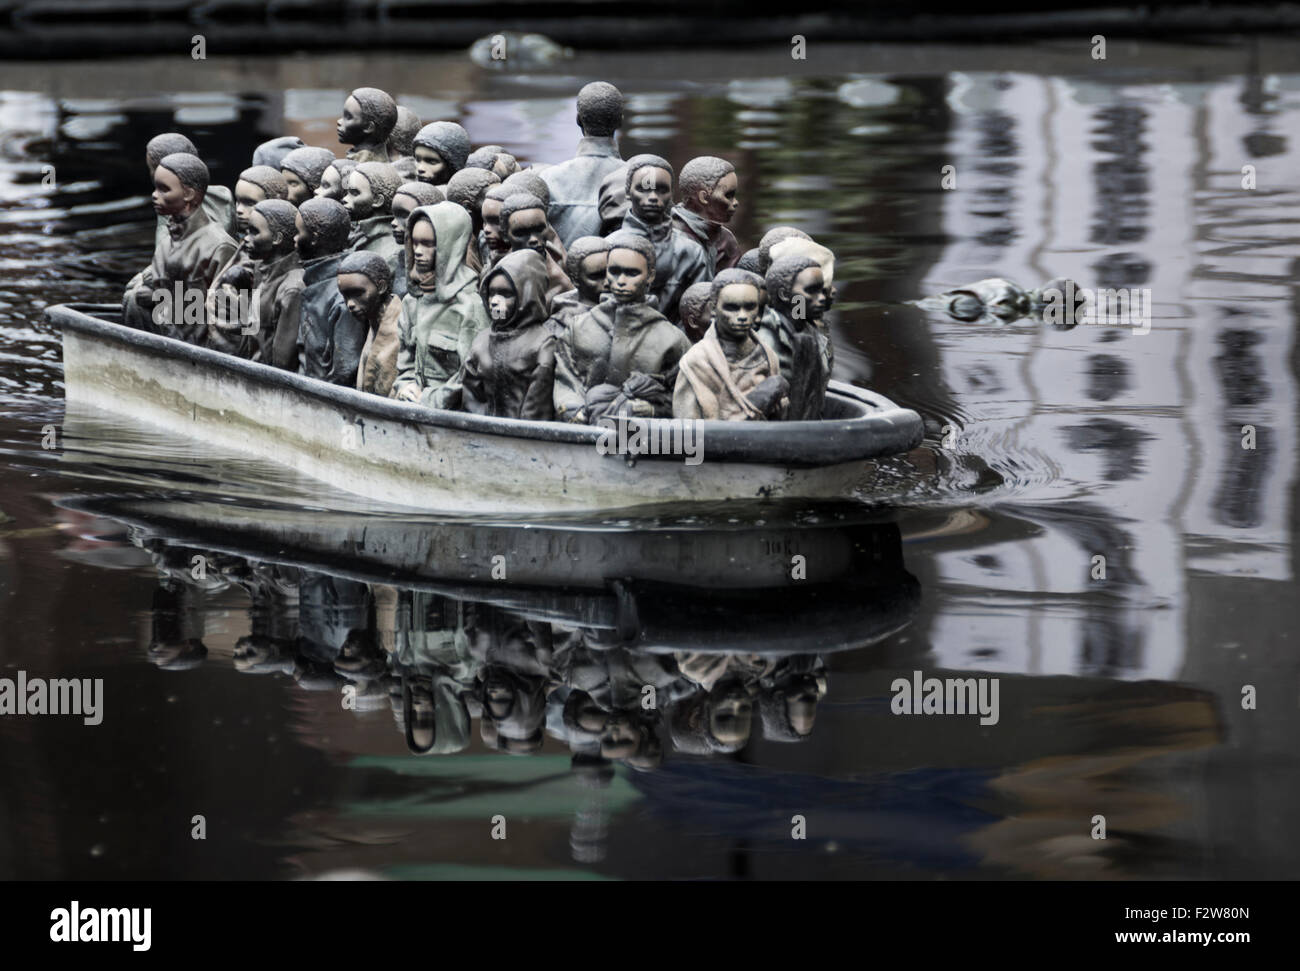 Le gite in barca sul lago, un commento dell'Europa crisi di rifugiati a Banksy's Dismaland. Foto Stock